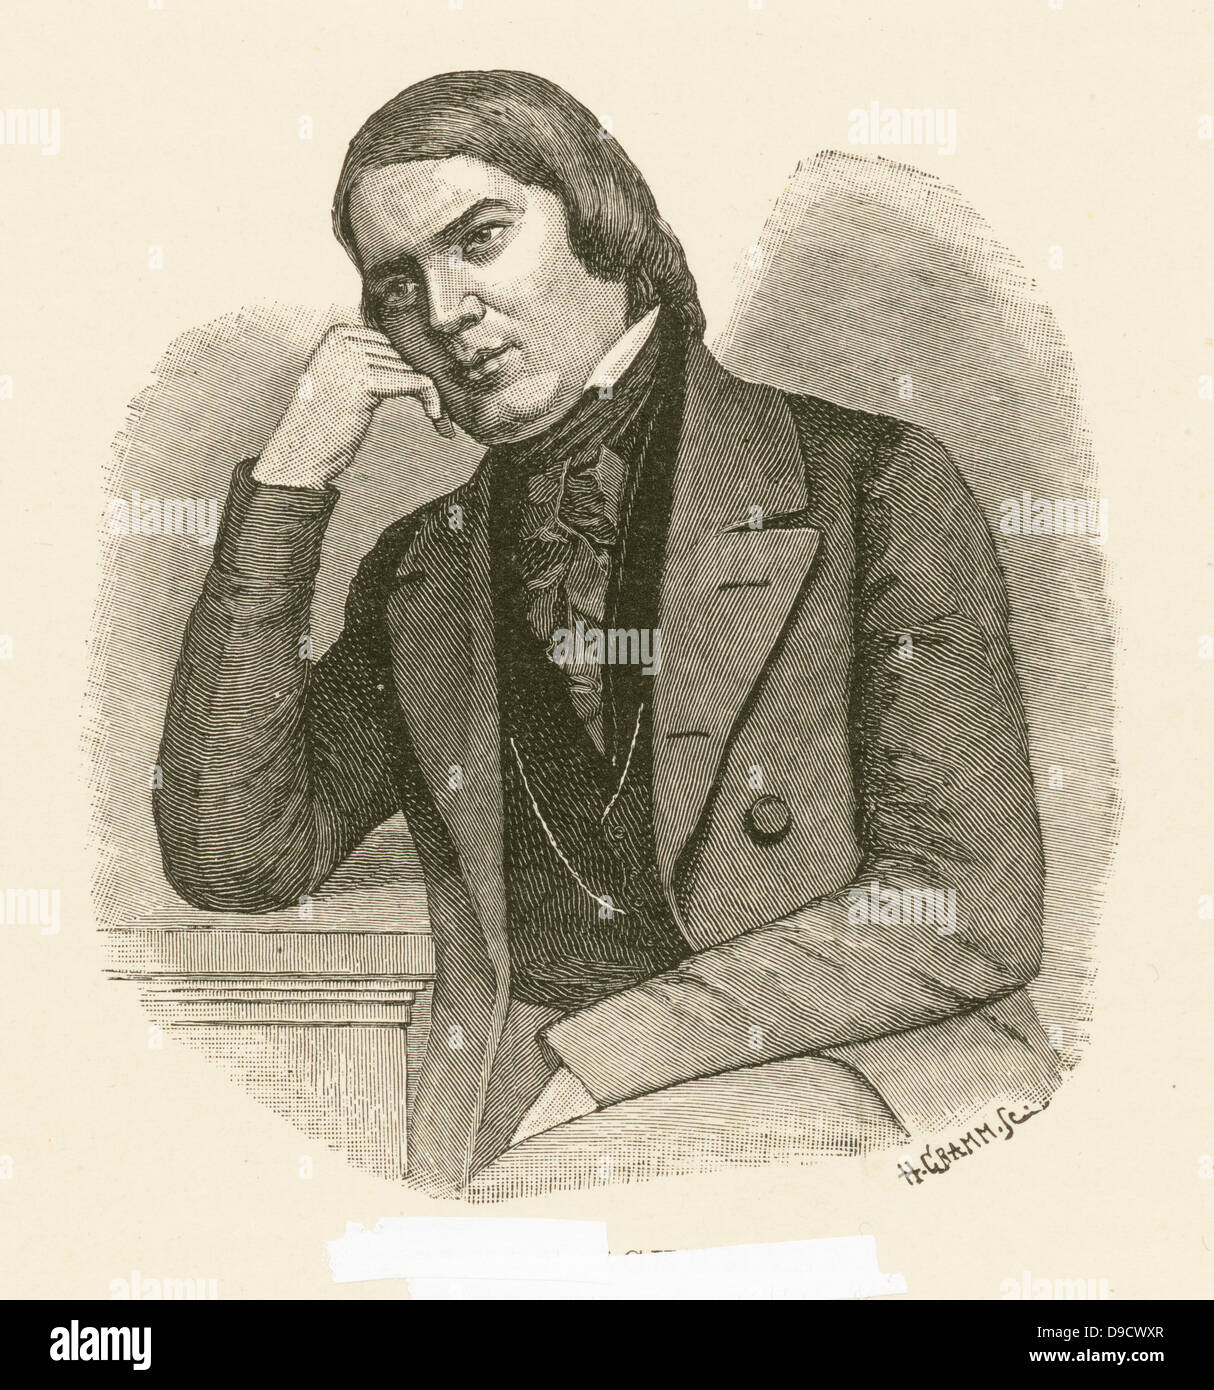 Robert Schumann (1810-1856)c1850, pianiste et compositeur allemand de l'époque romantique. Il épouse la pianiste Clara Wieck en 1840. La gravure. Banque D'Images